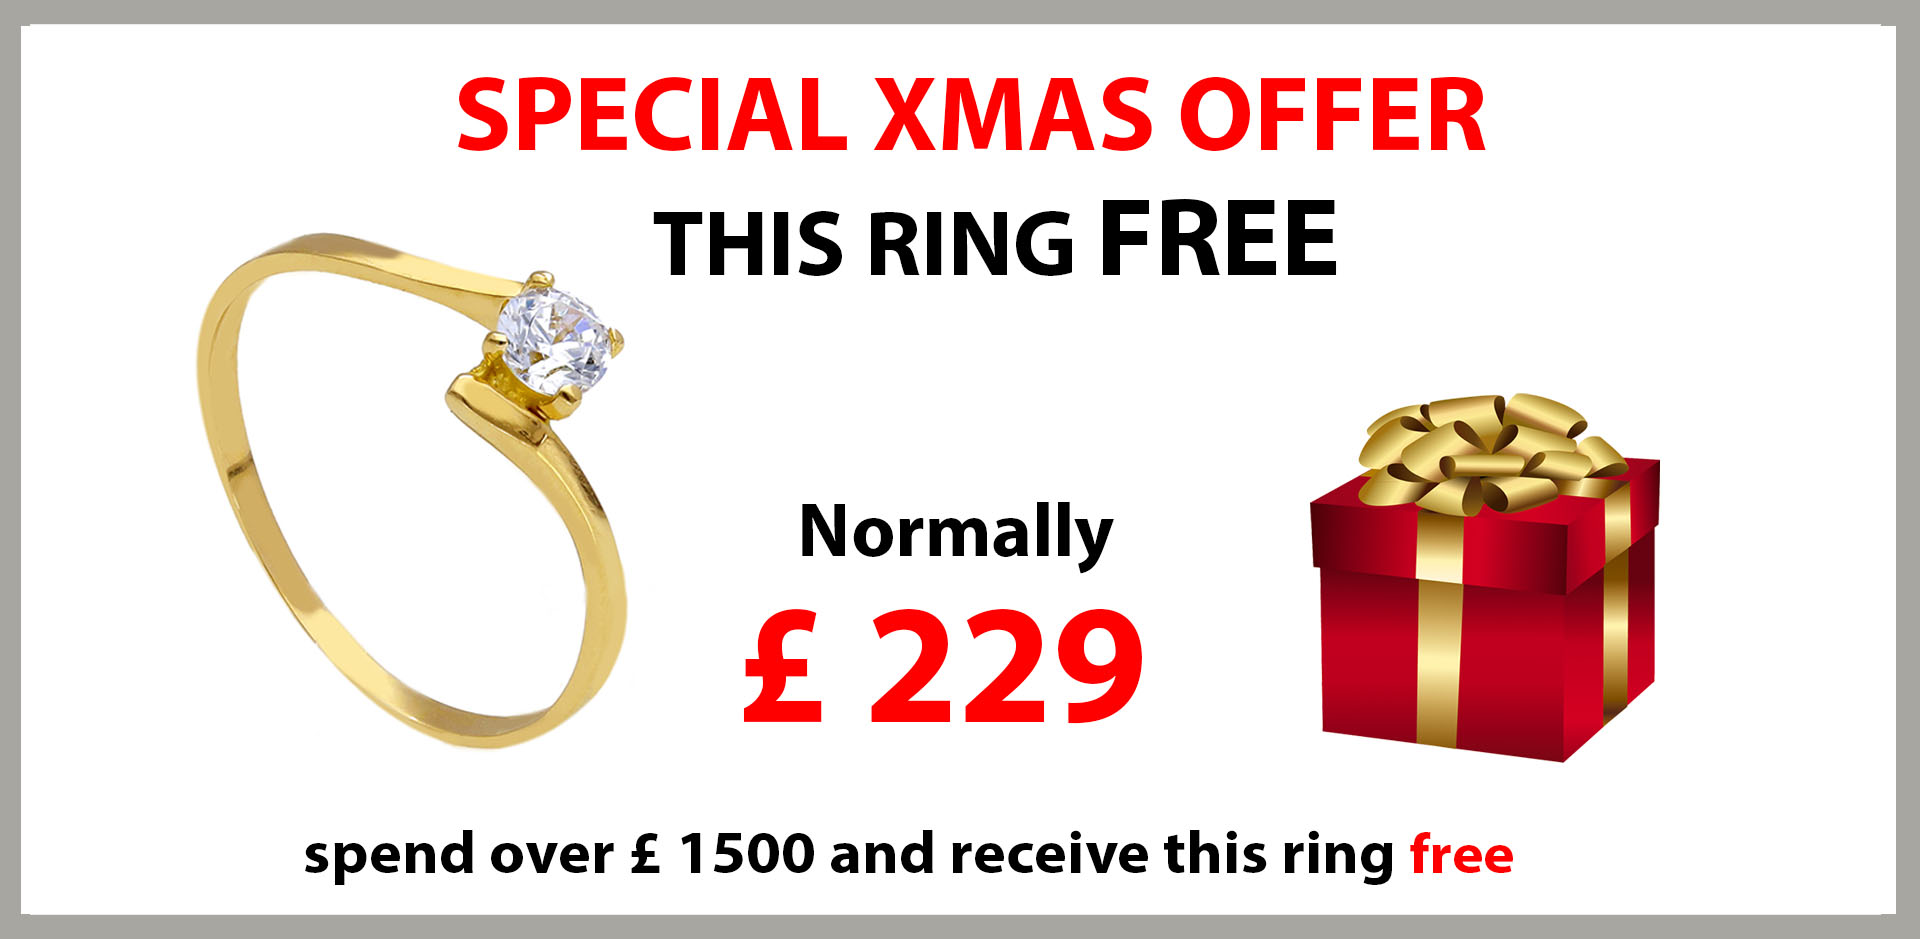 Free Ring